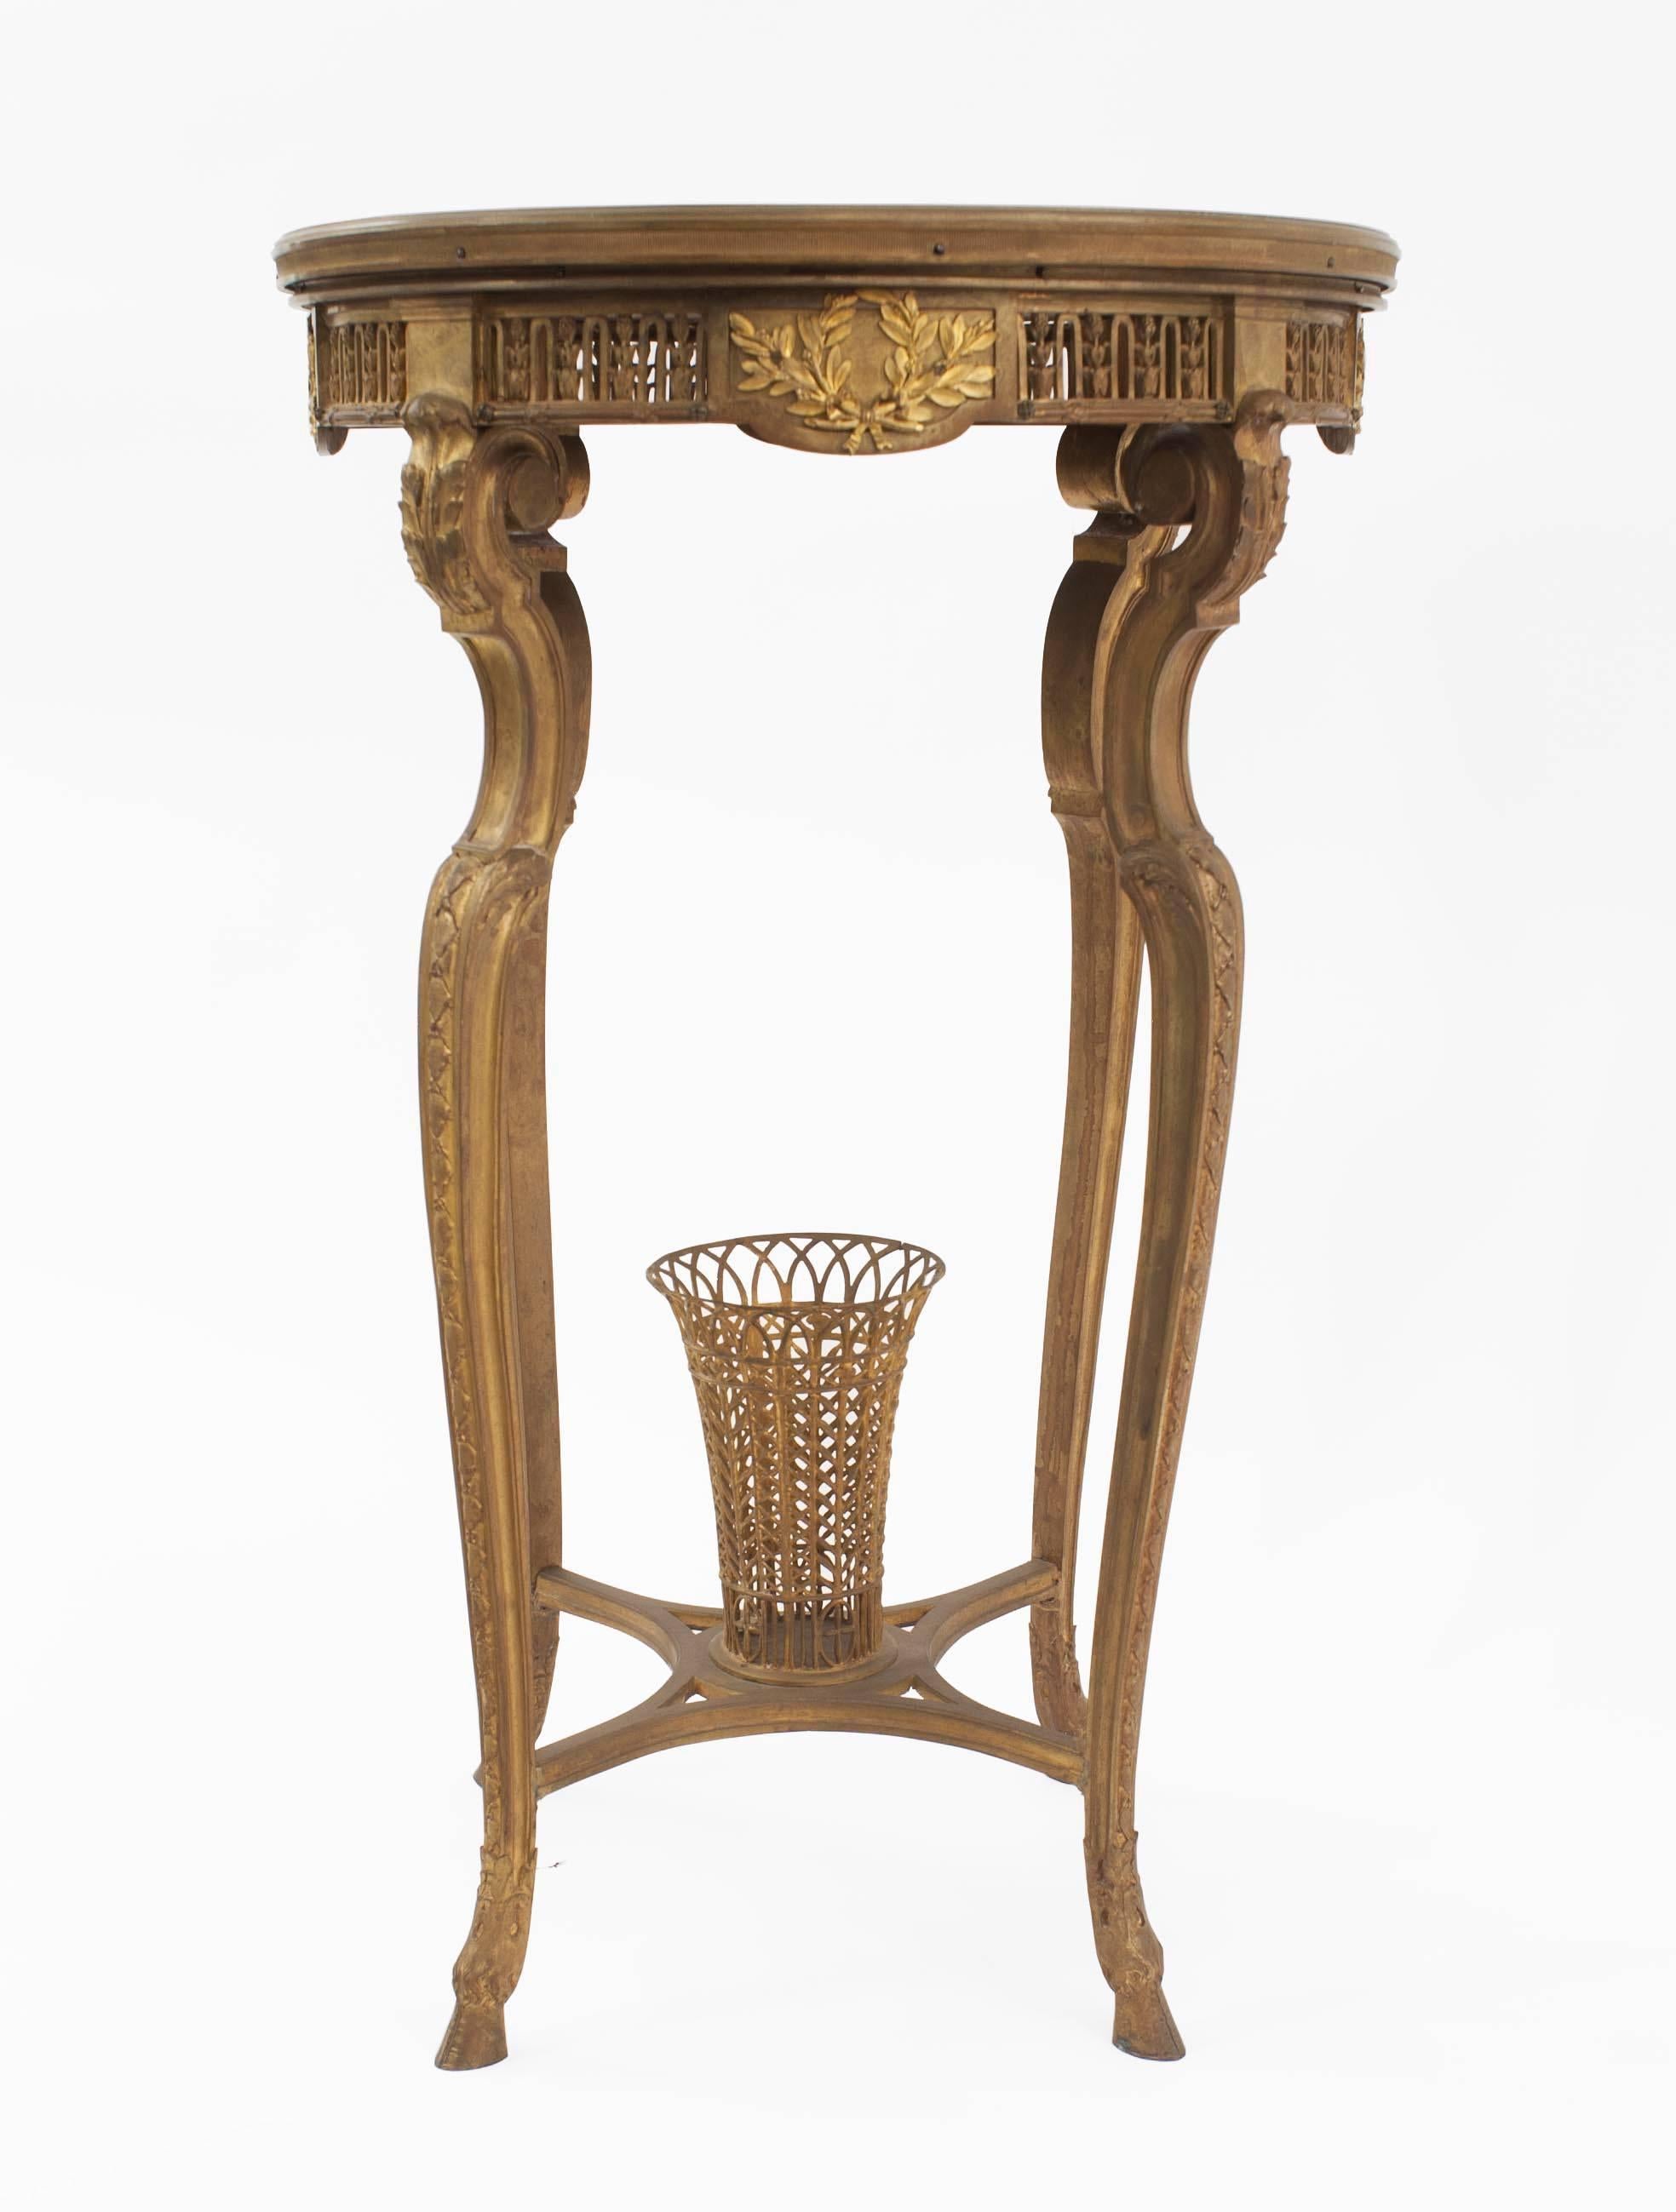 Table d'appoint ronde en bronze doré de style R√©gence française (XIXe siècle), à traverse en panier et plateau en marbre.
